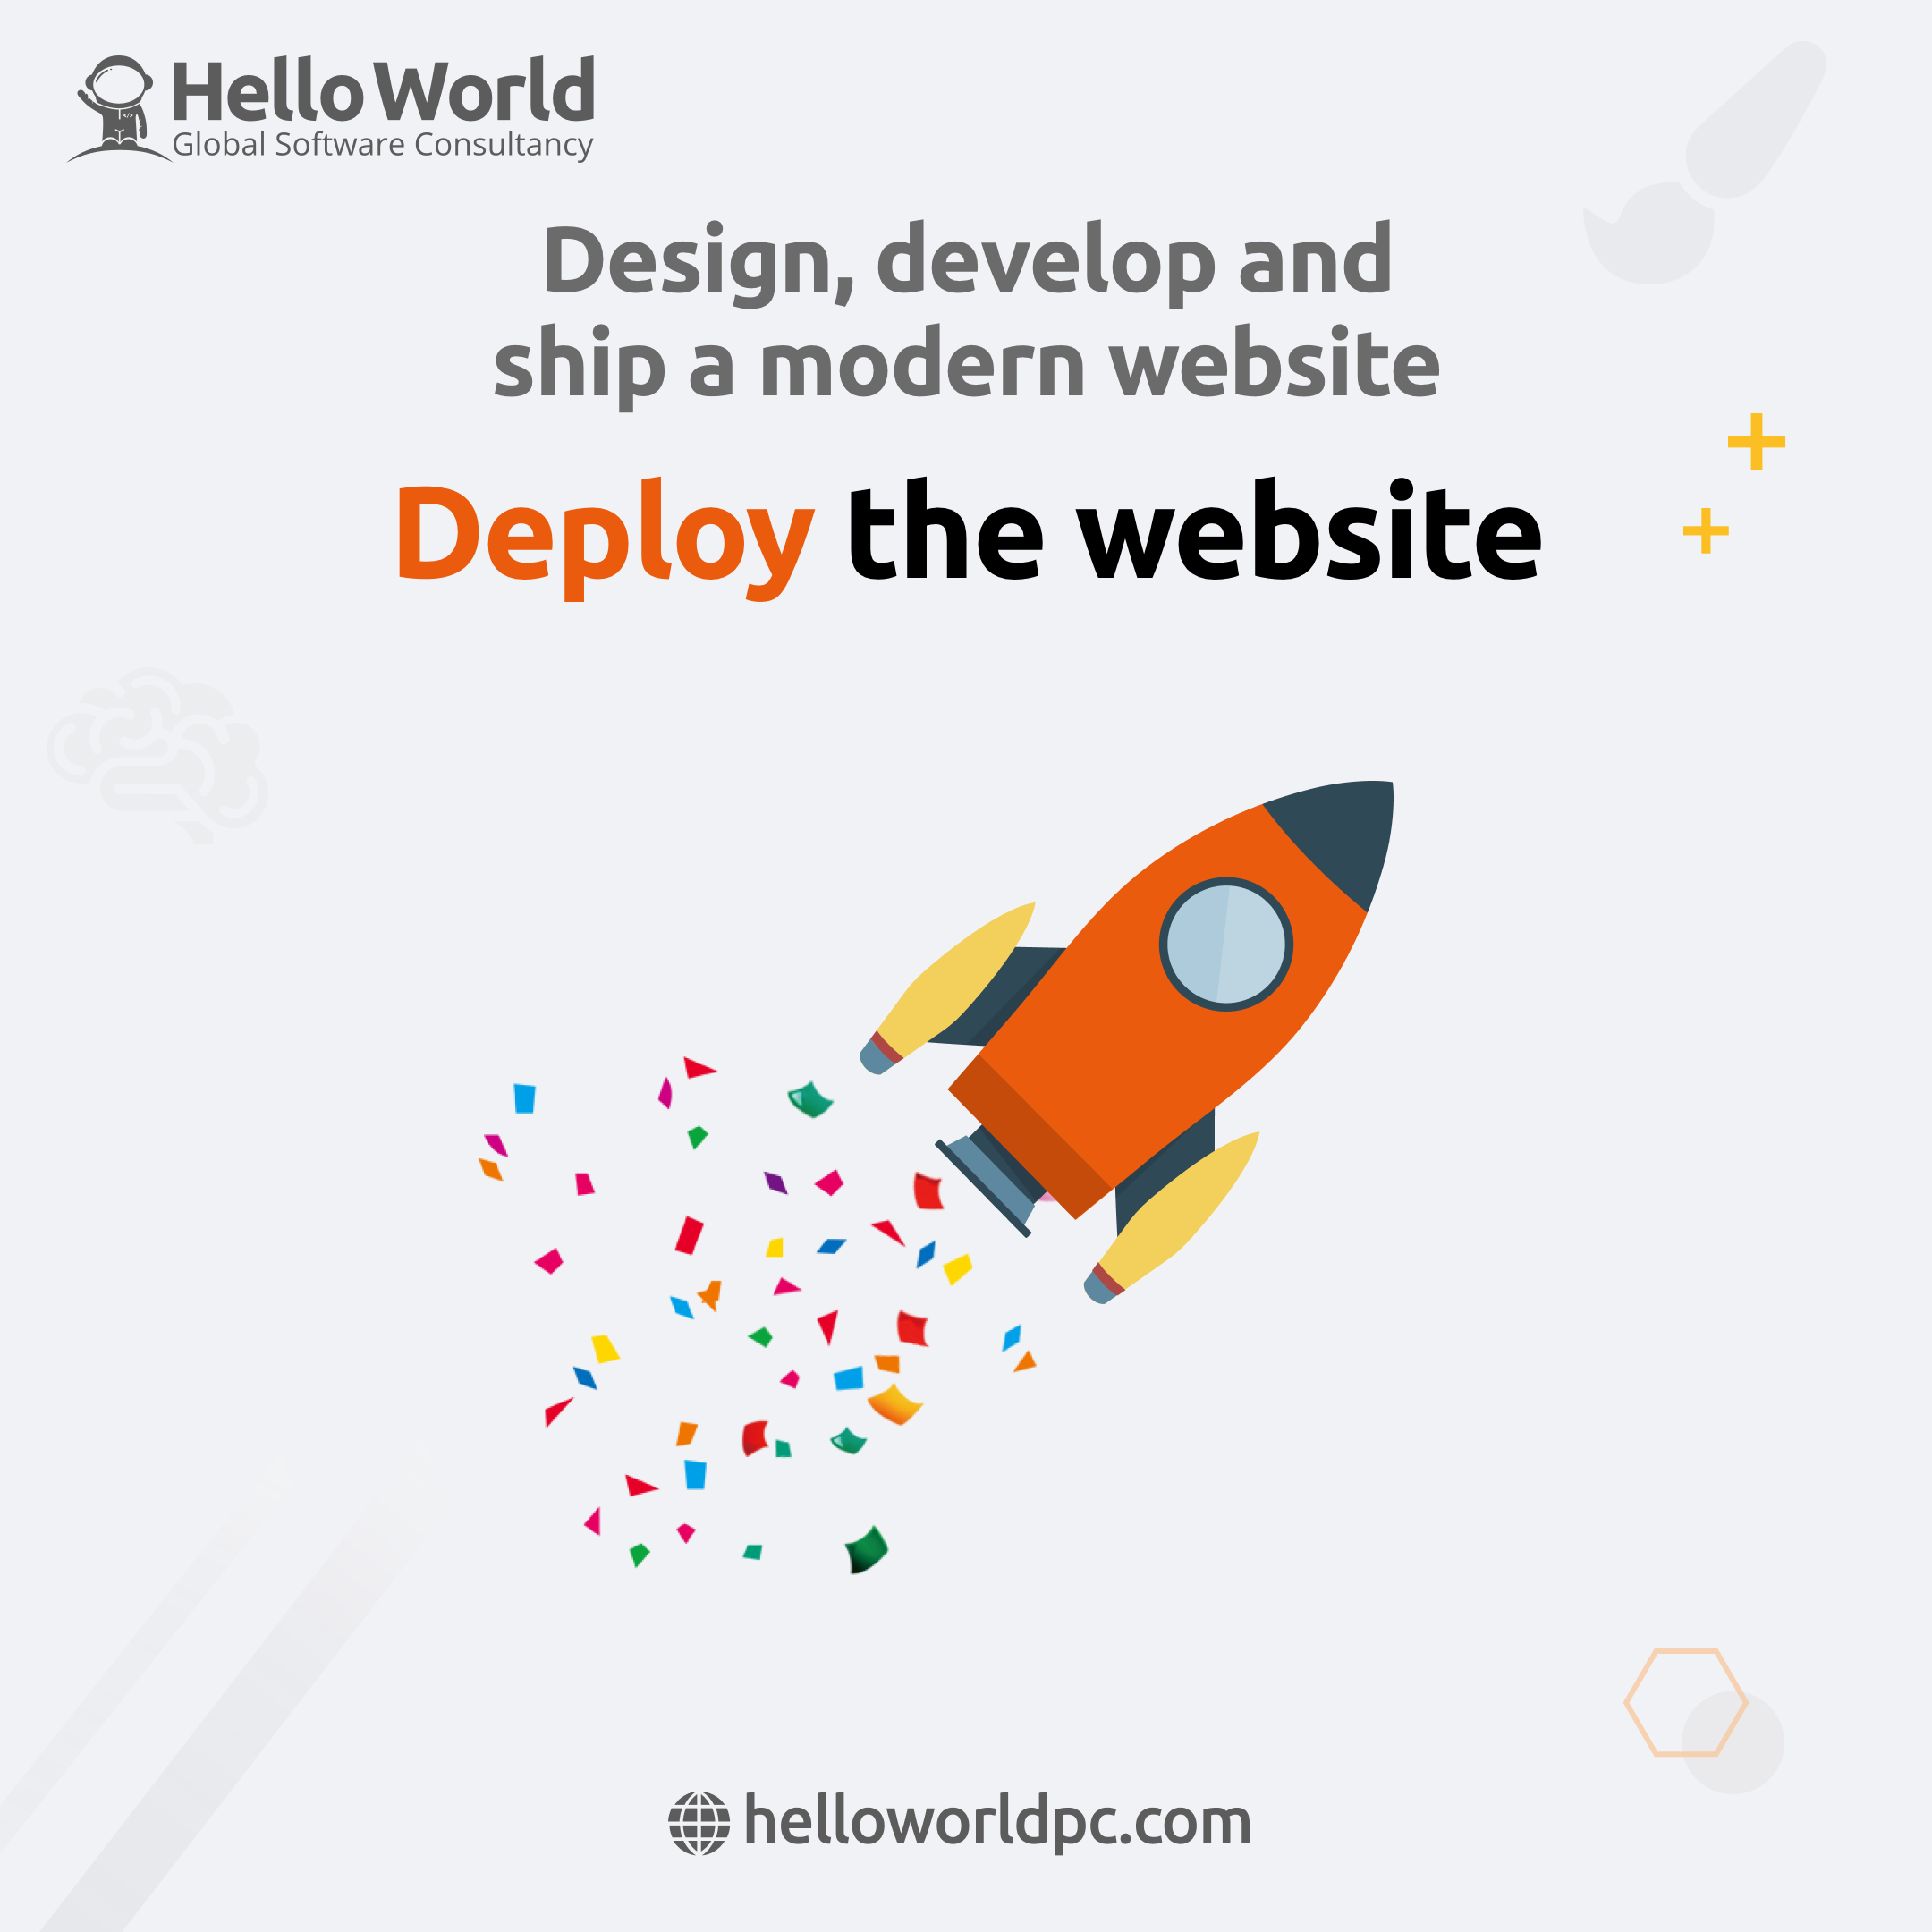 Modern Website: Deploy the website